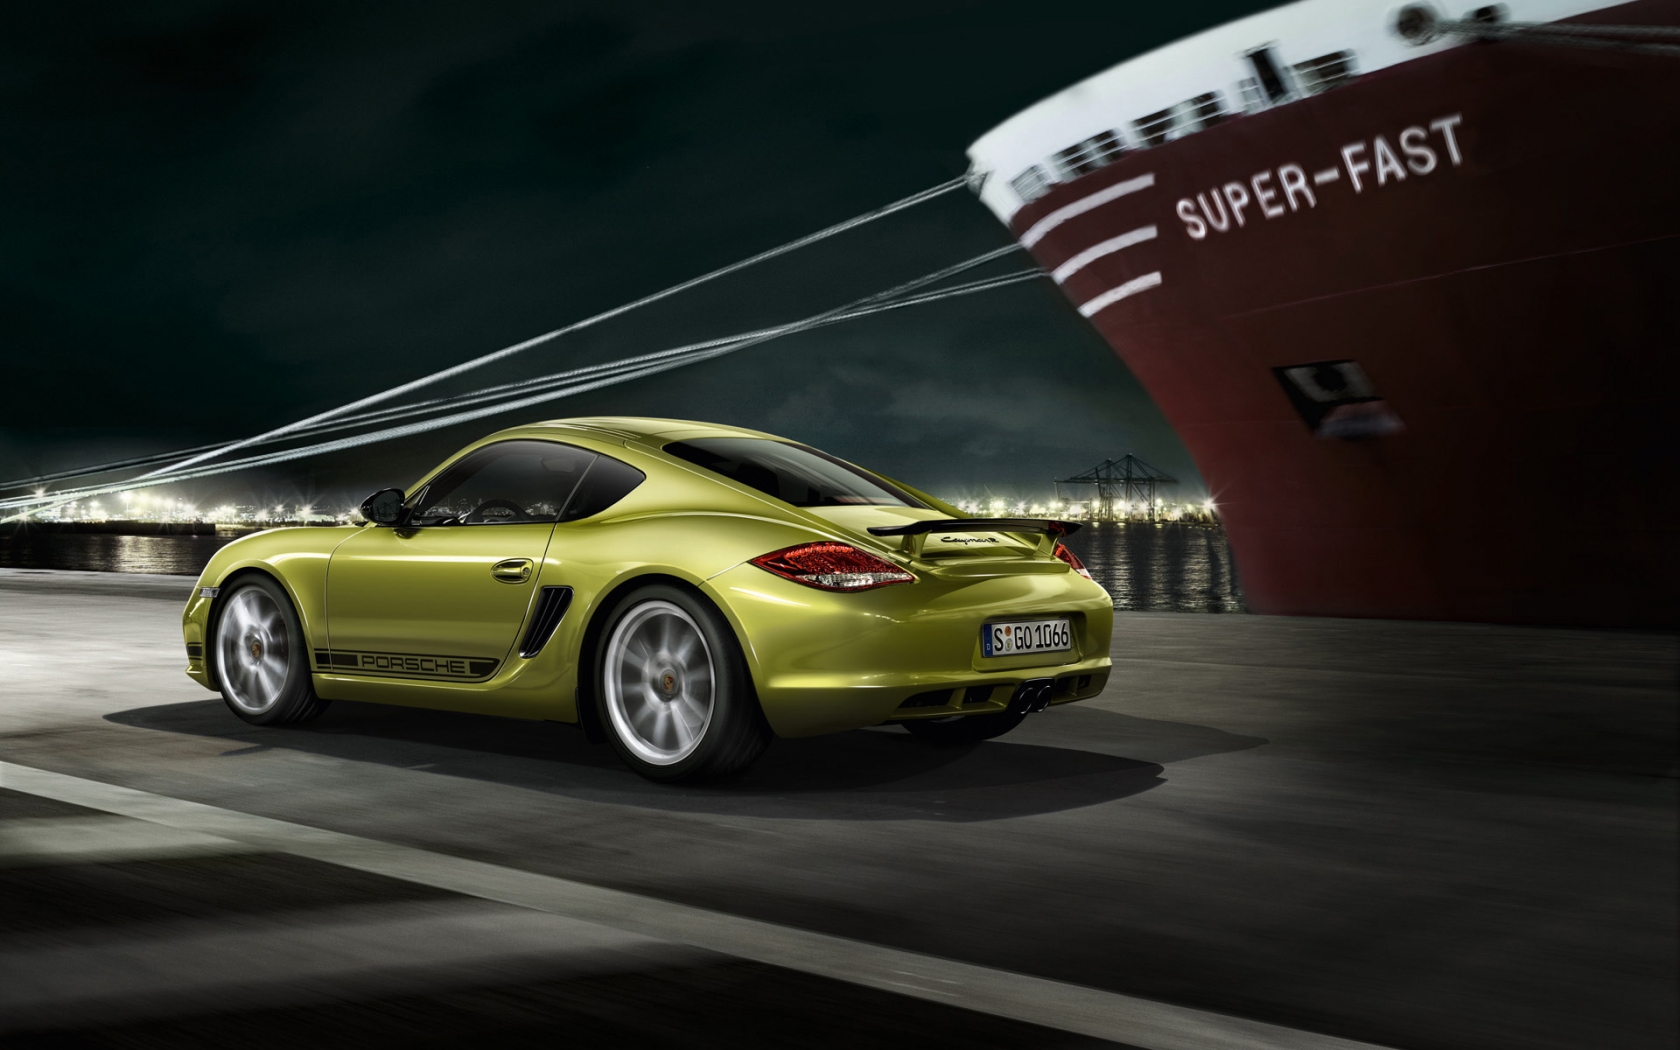 2011 Porsche Cayman R Speed for 1680 x 1050 widescreen resolution